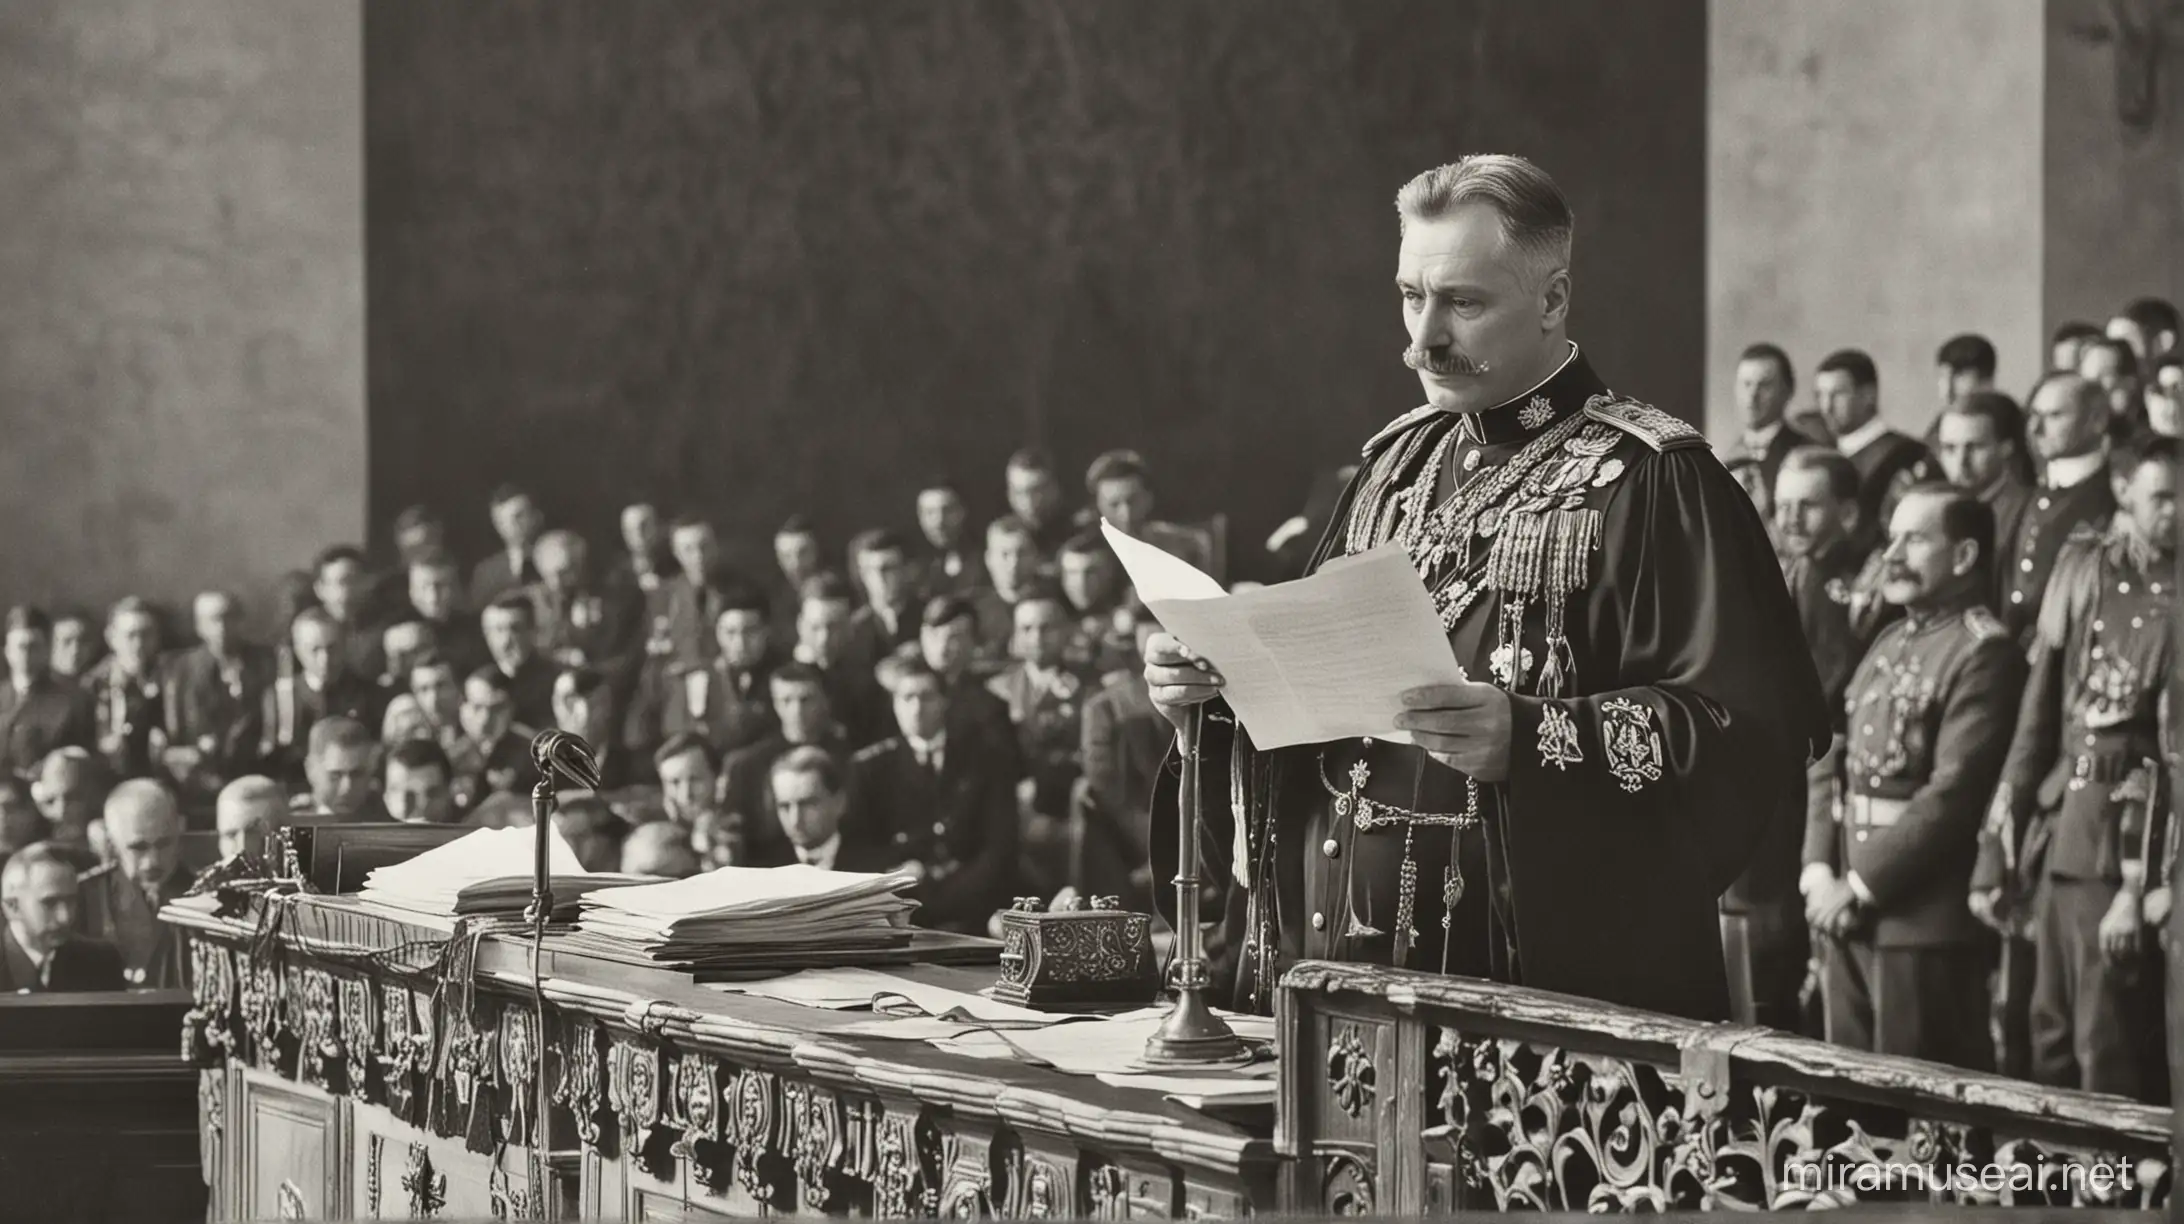 General romeno discursando em um altar, segurando um documento. no tribunal em 1910.